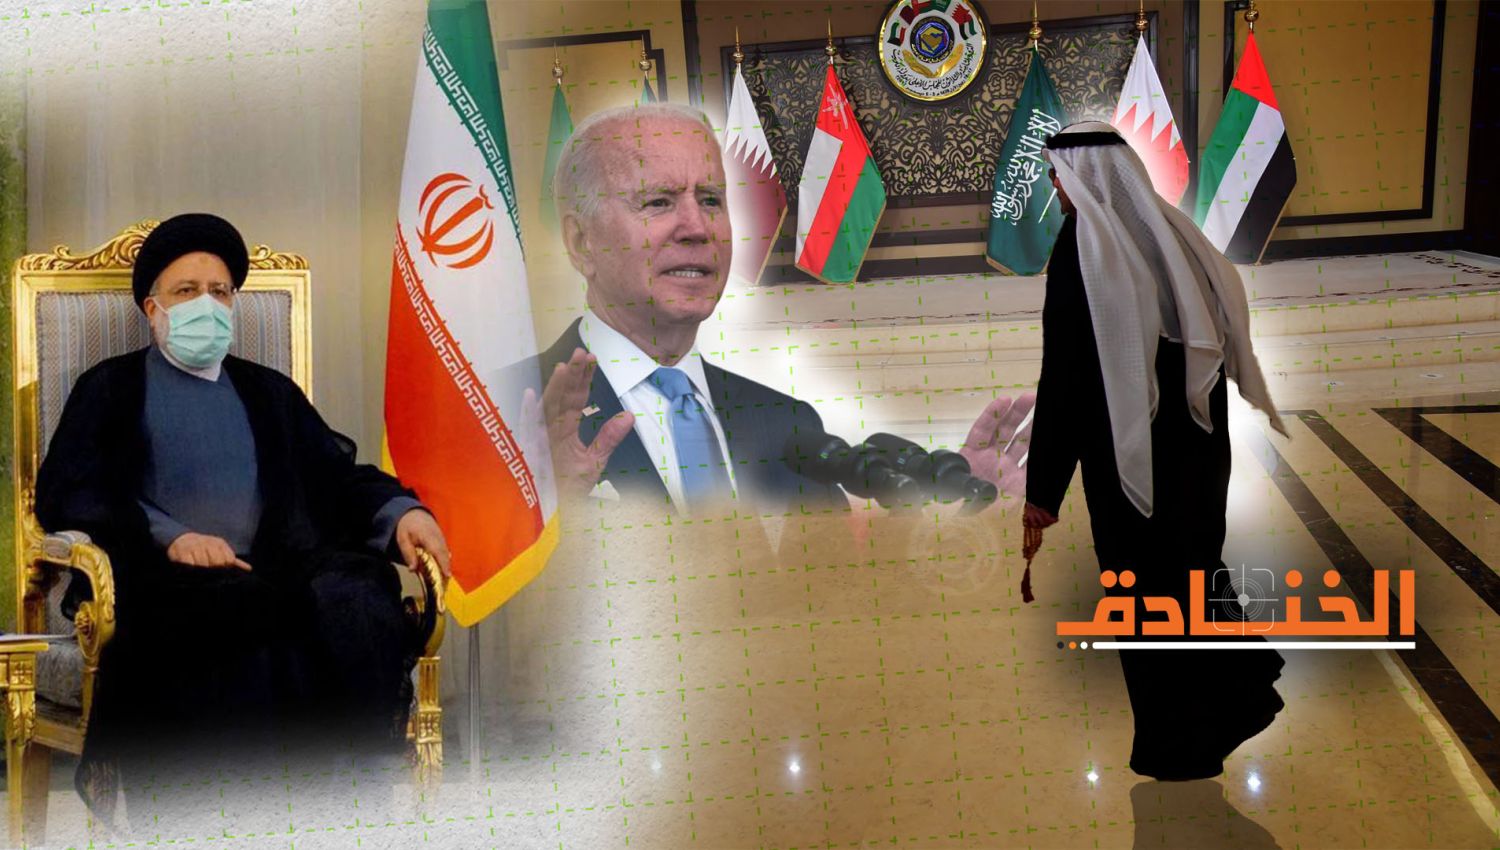 أمريكا لدول الخليج: اتفقوا مع ايران لكن لا توقعوا قبل أن نوقع